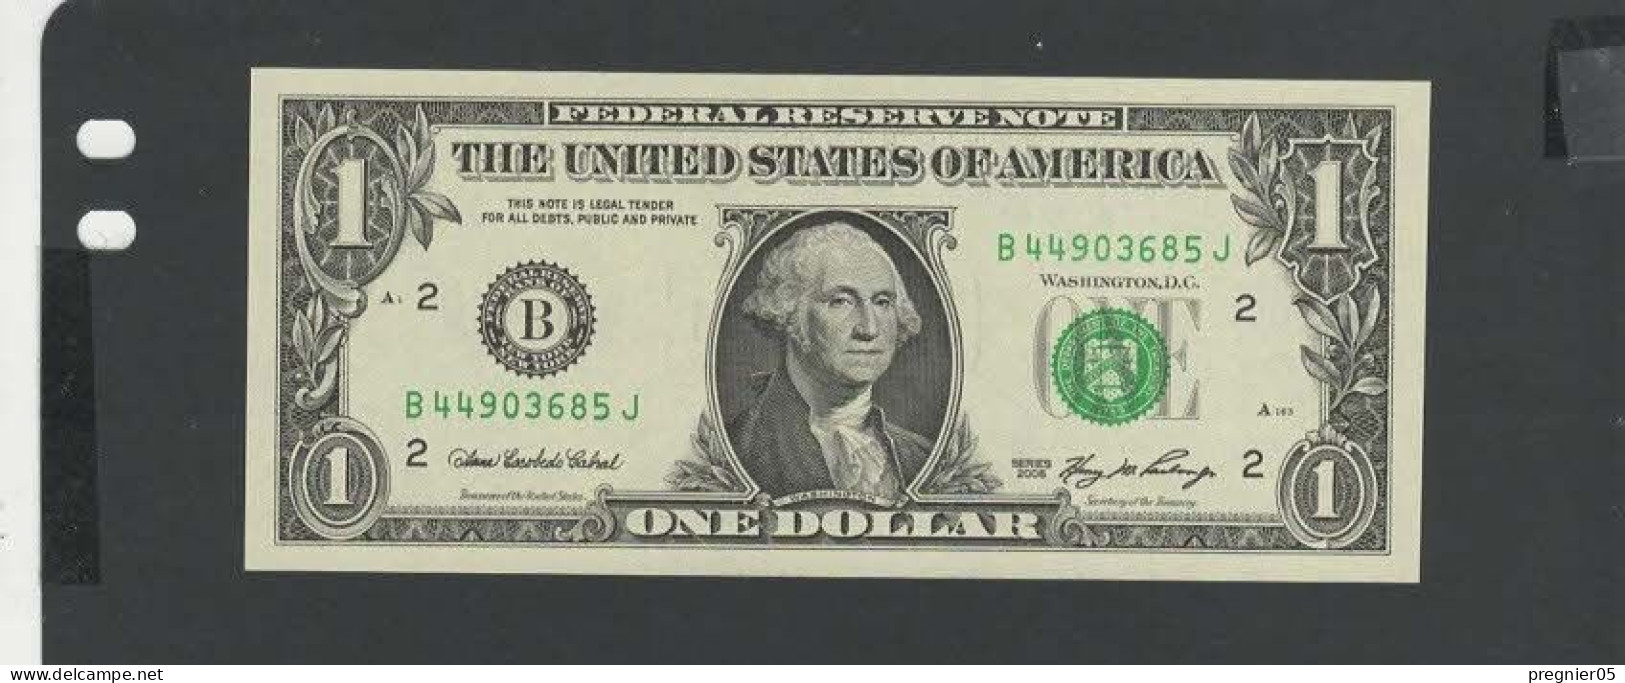 USA - Billet 1 Dollar 2006 NEUF/UNC P.523 § B - Bilglietti Della Riserva Federale (1928-...)